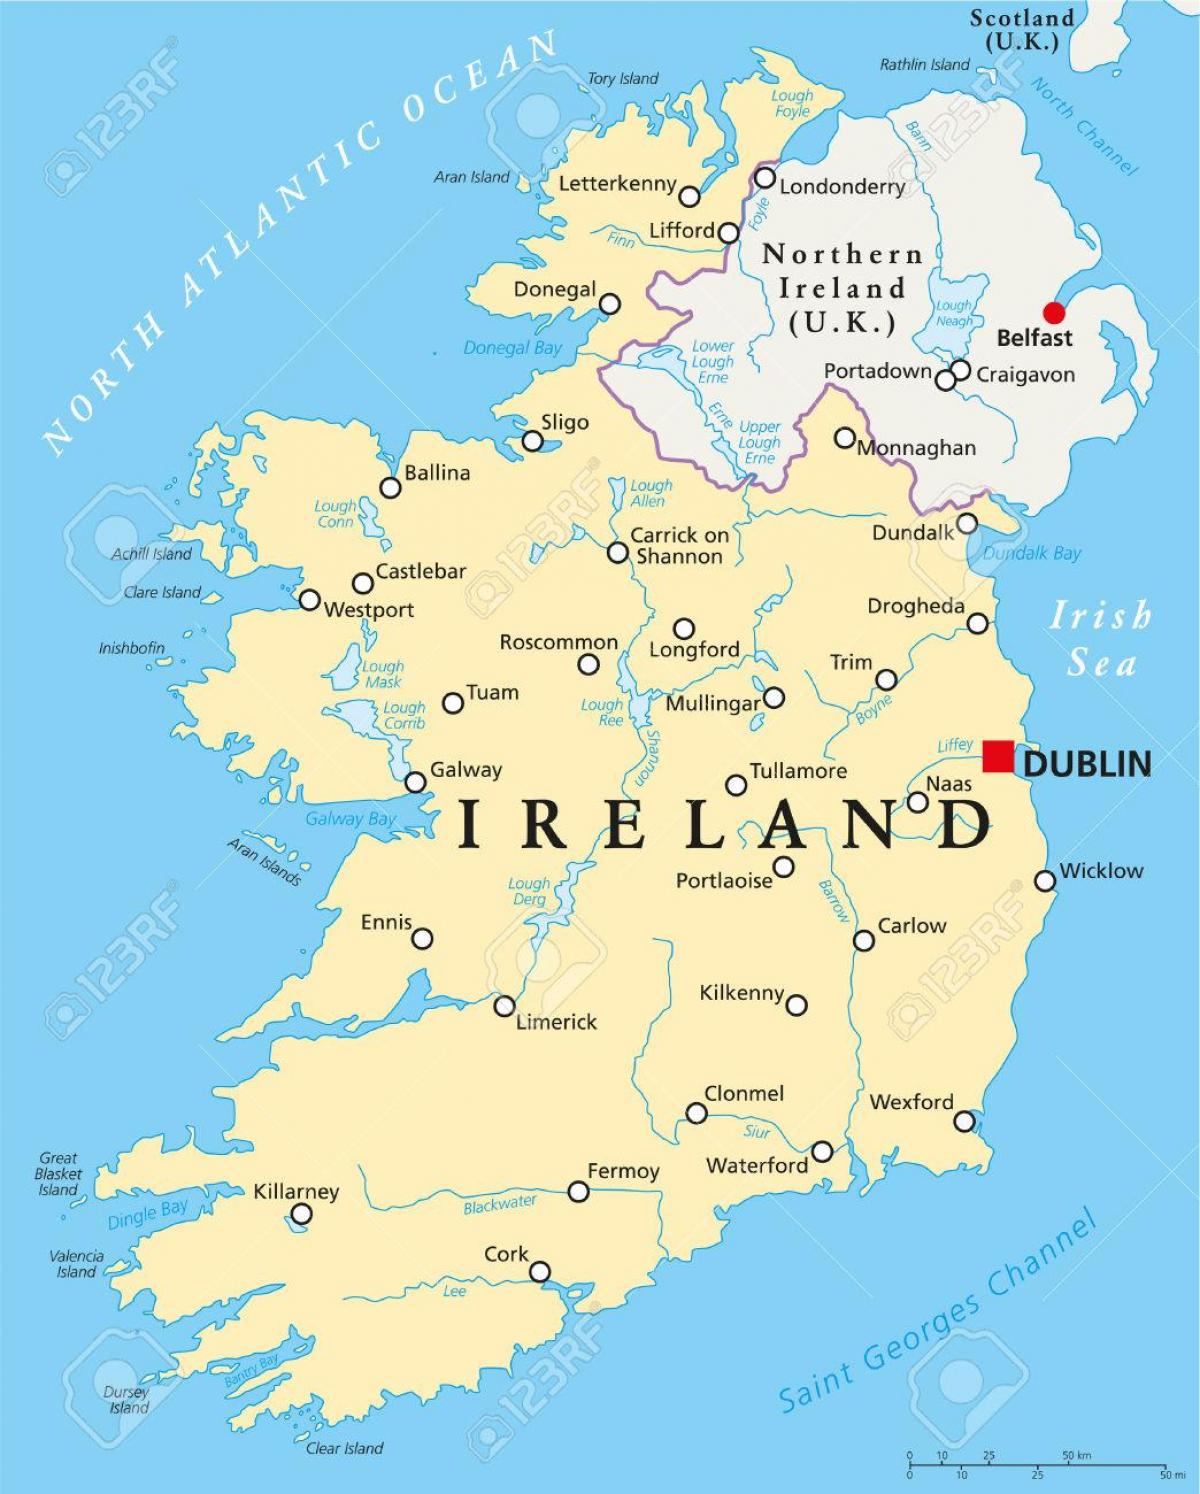 ڈبلن ، آئر لینڈ کا نقشہ